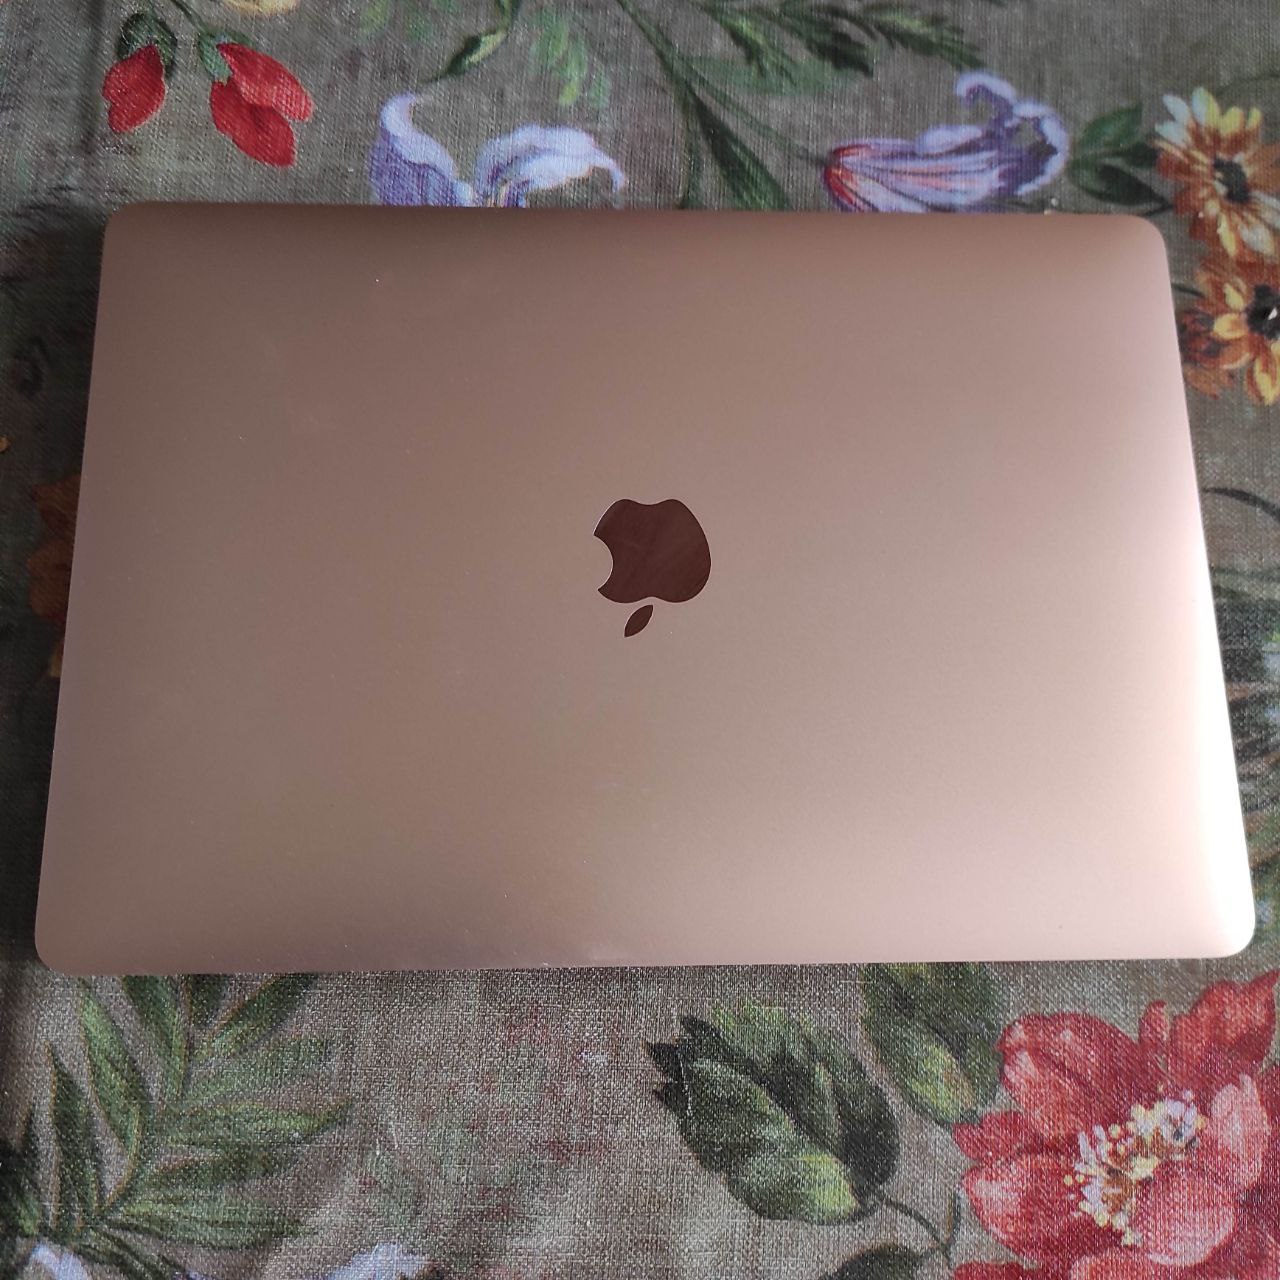 Macbook Air M1 Rose Gold 8go de ram SSD 256go